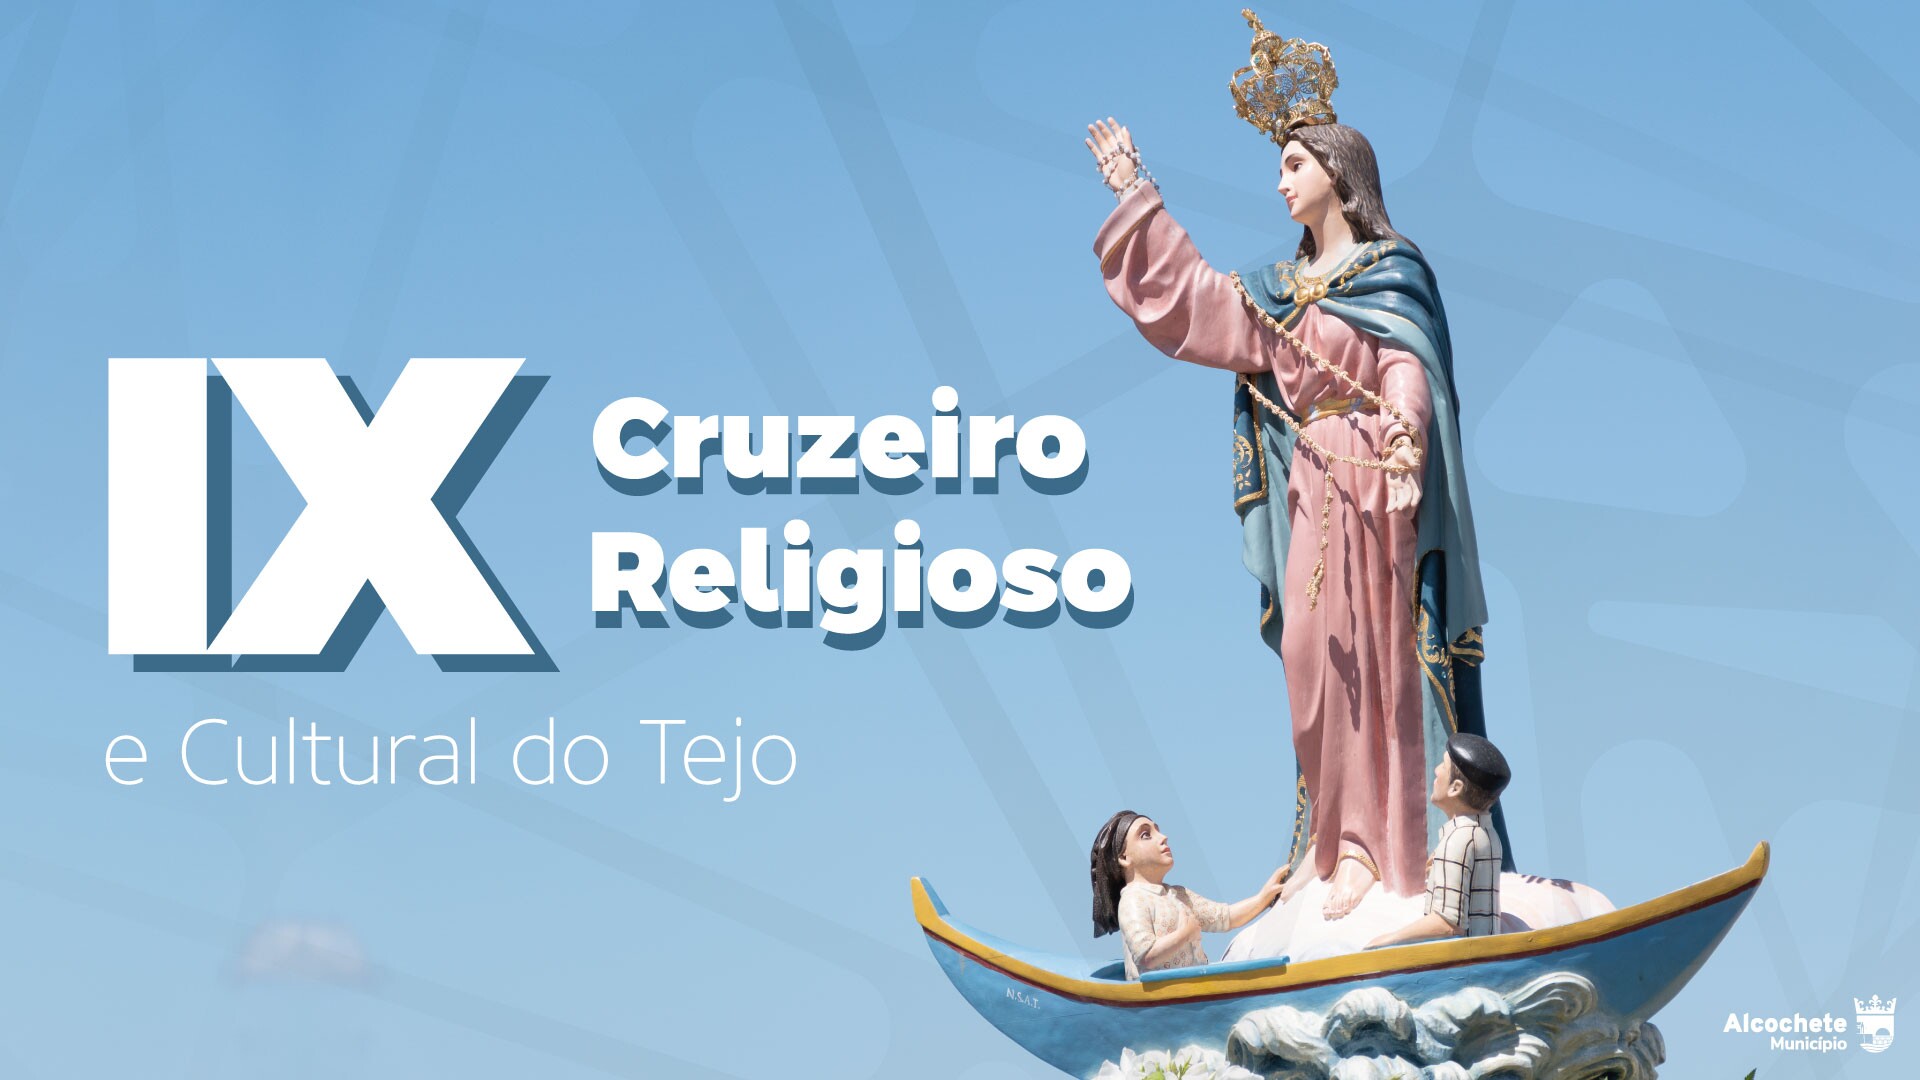  IX Cruzeiro Religioso e Cultural do Tejo